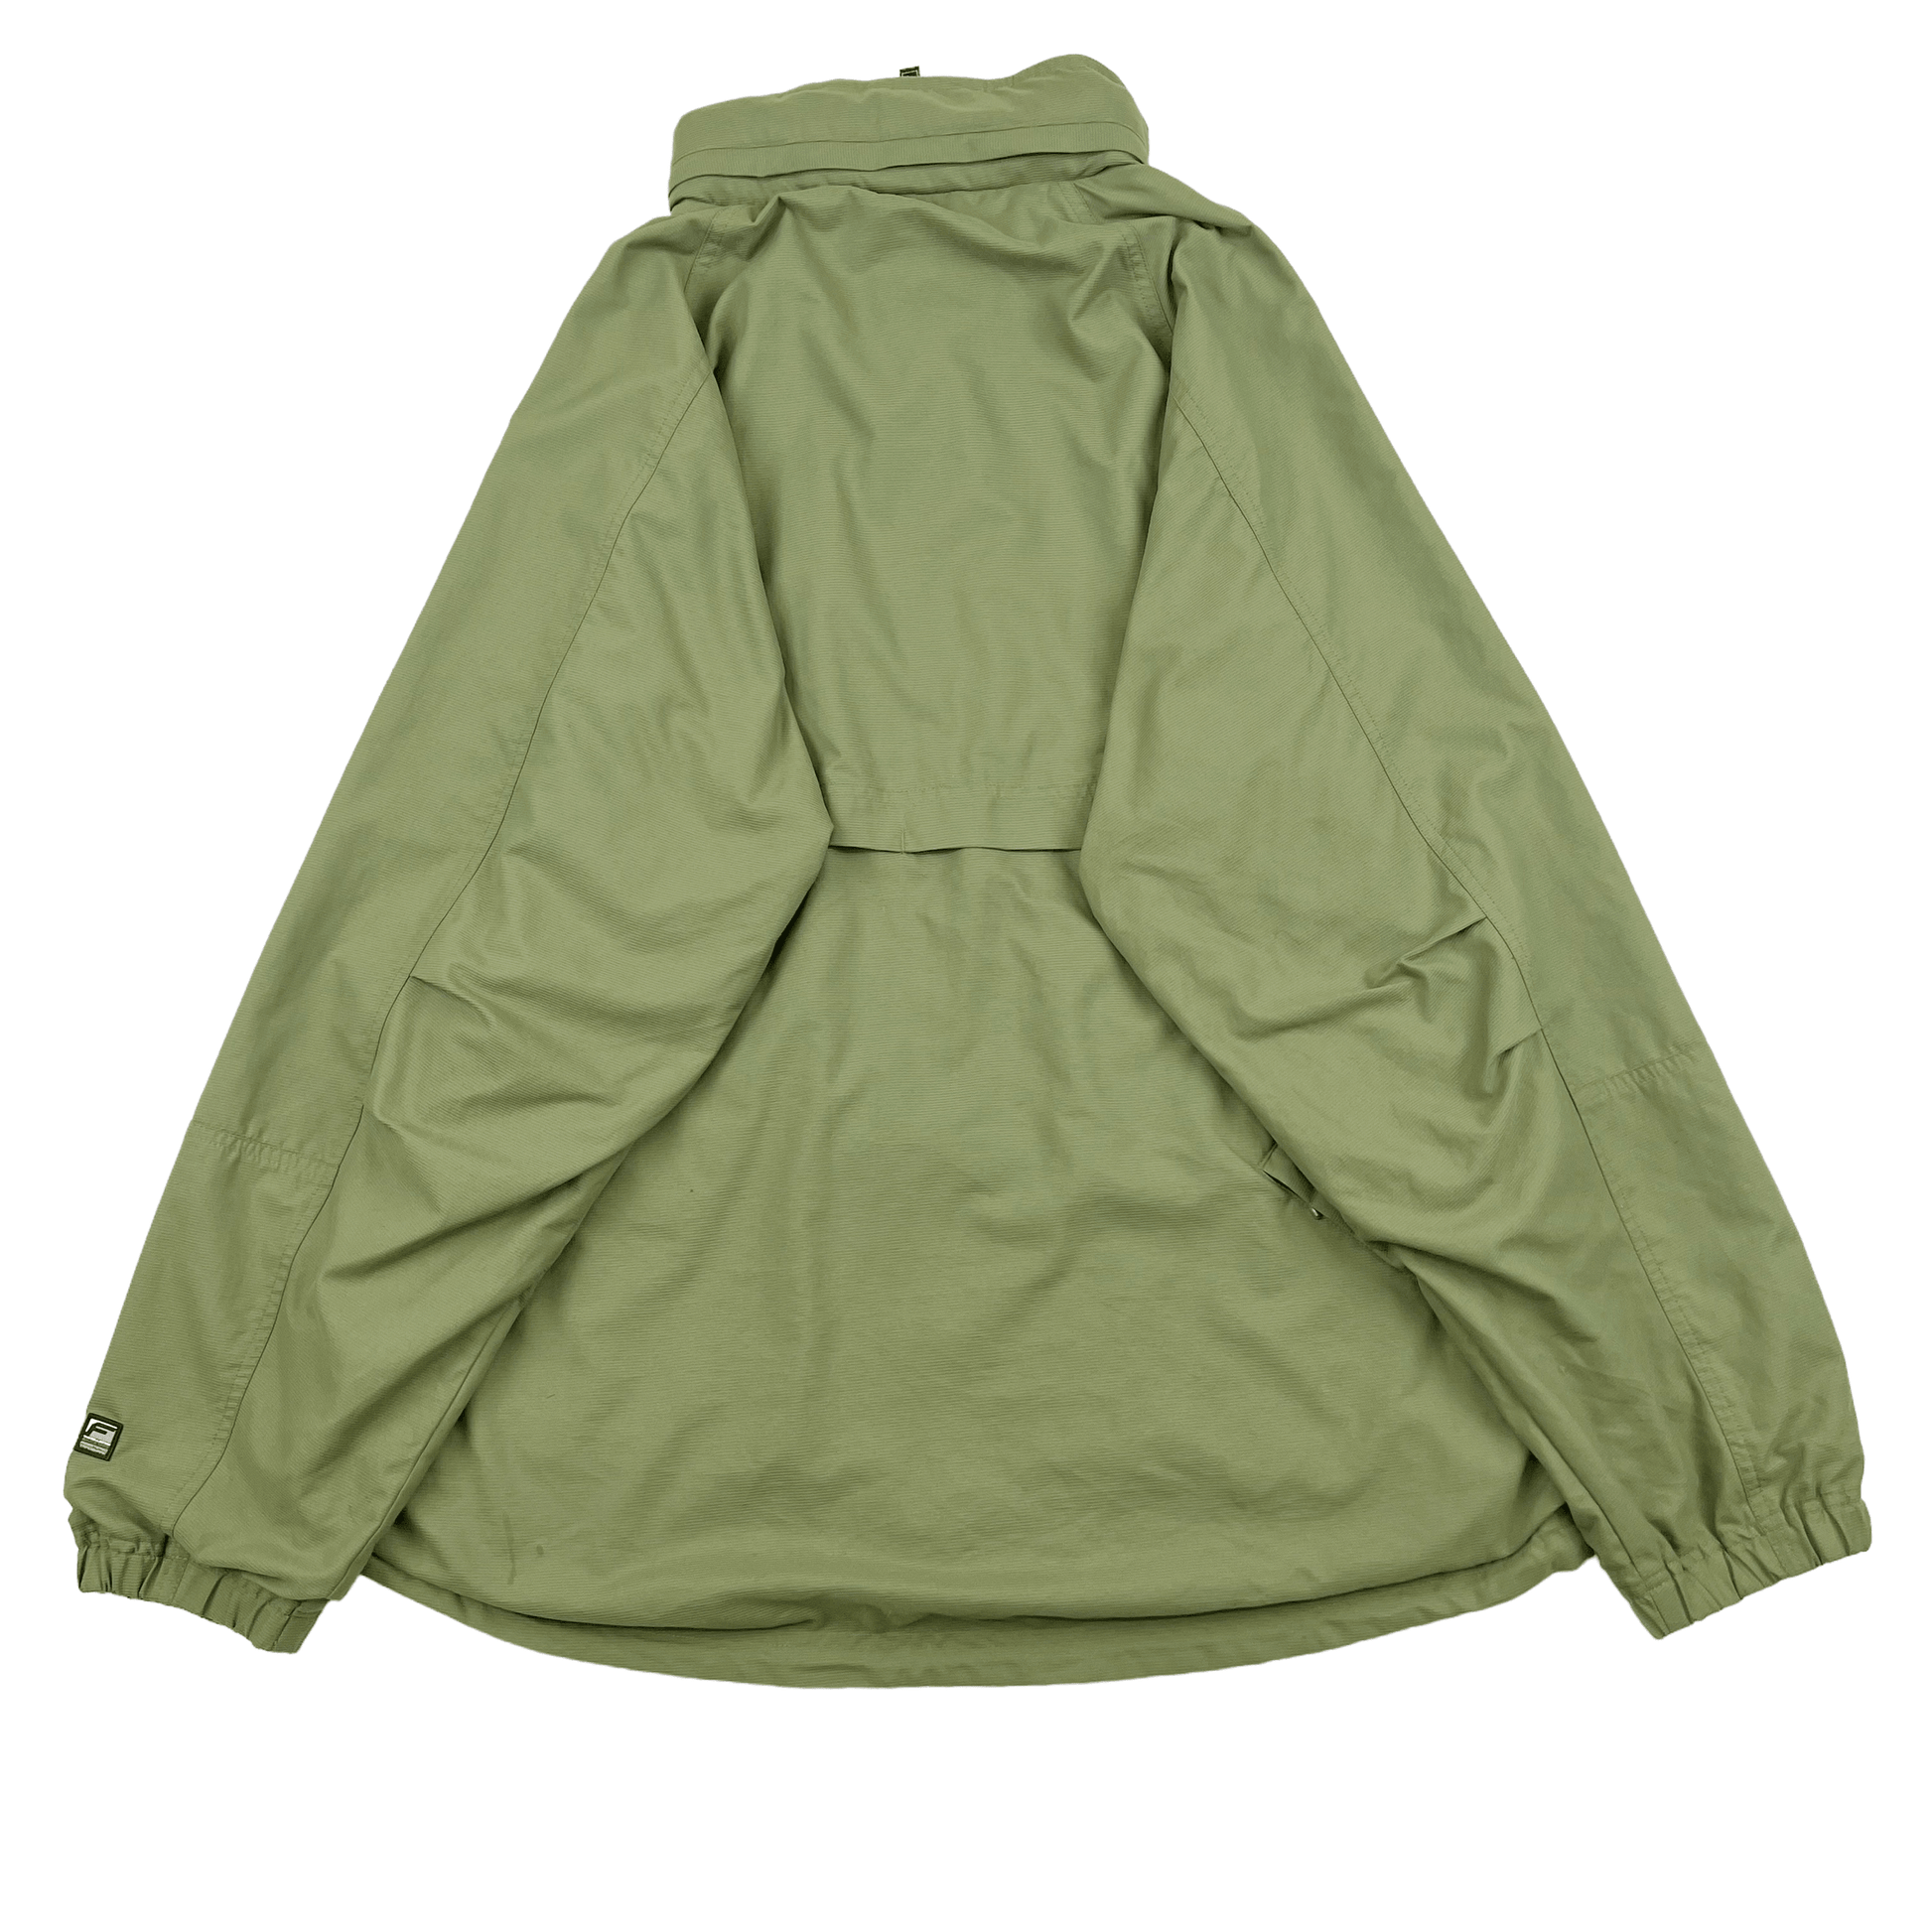 Fubu Jacket (L) - Known Source